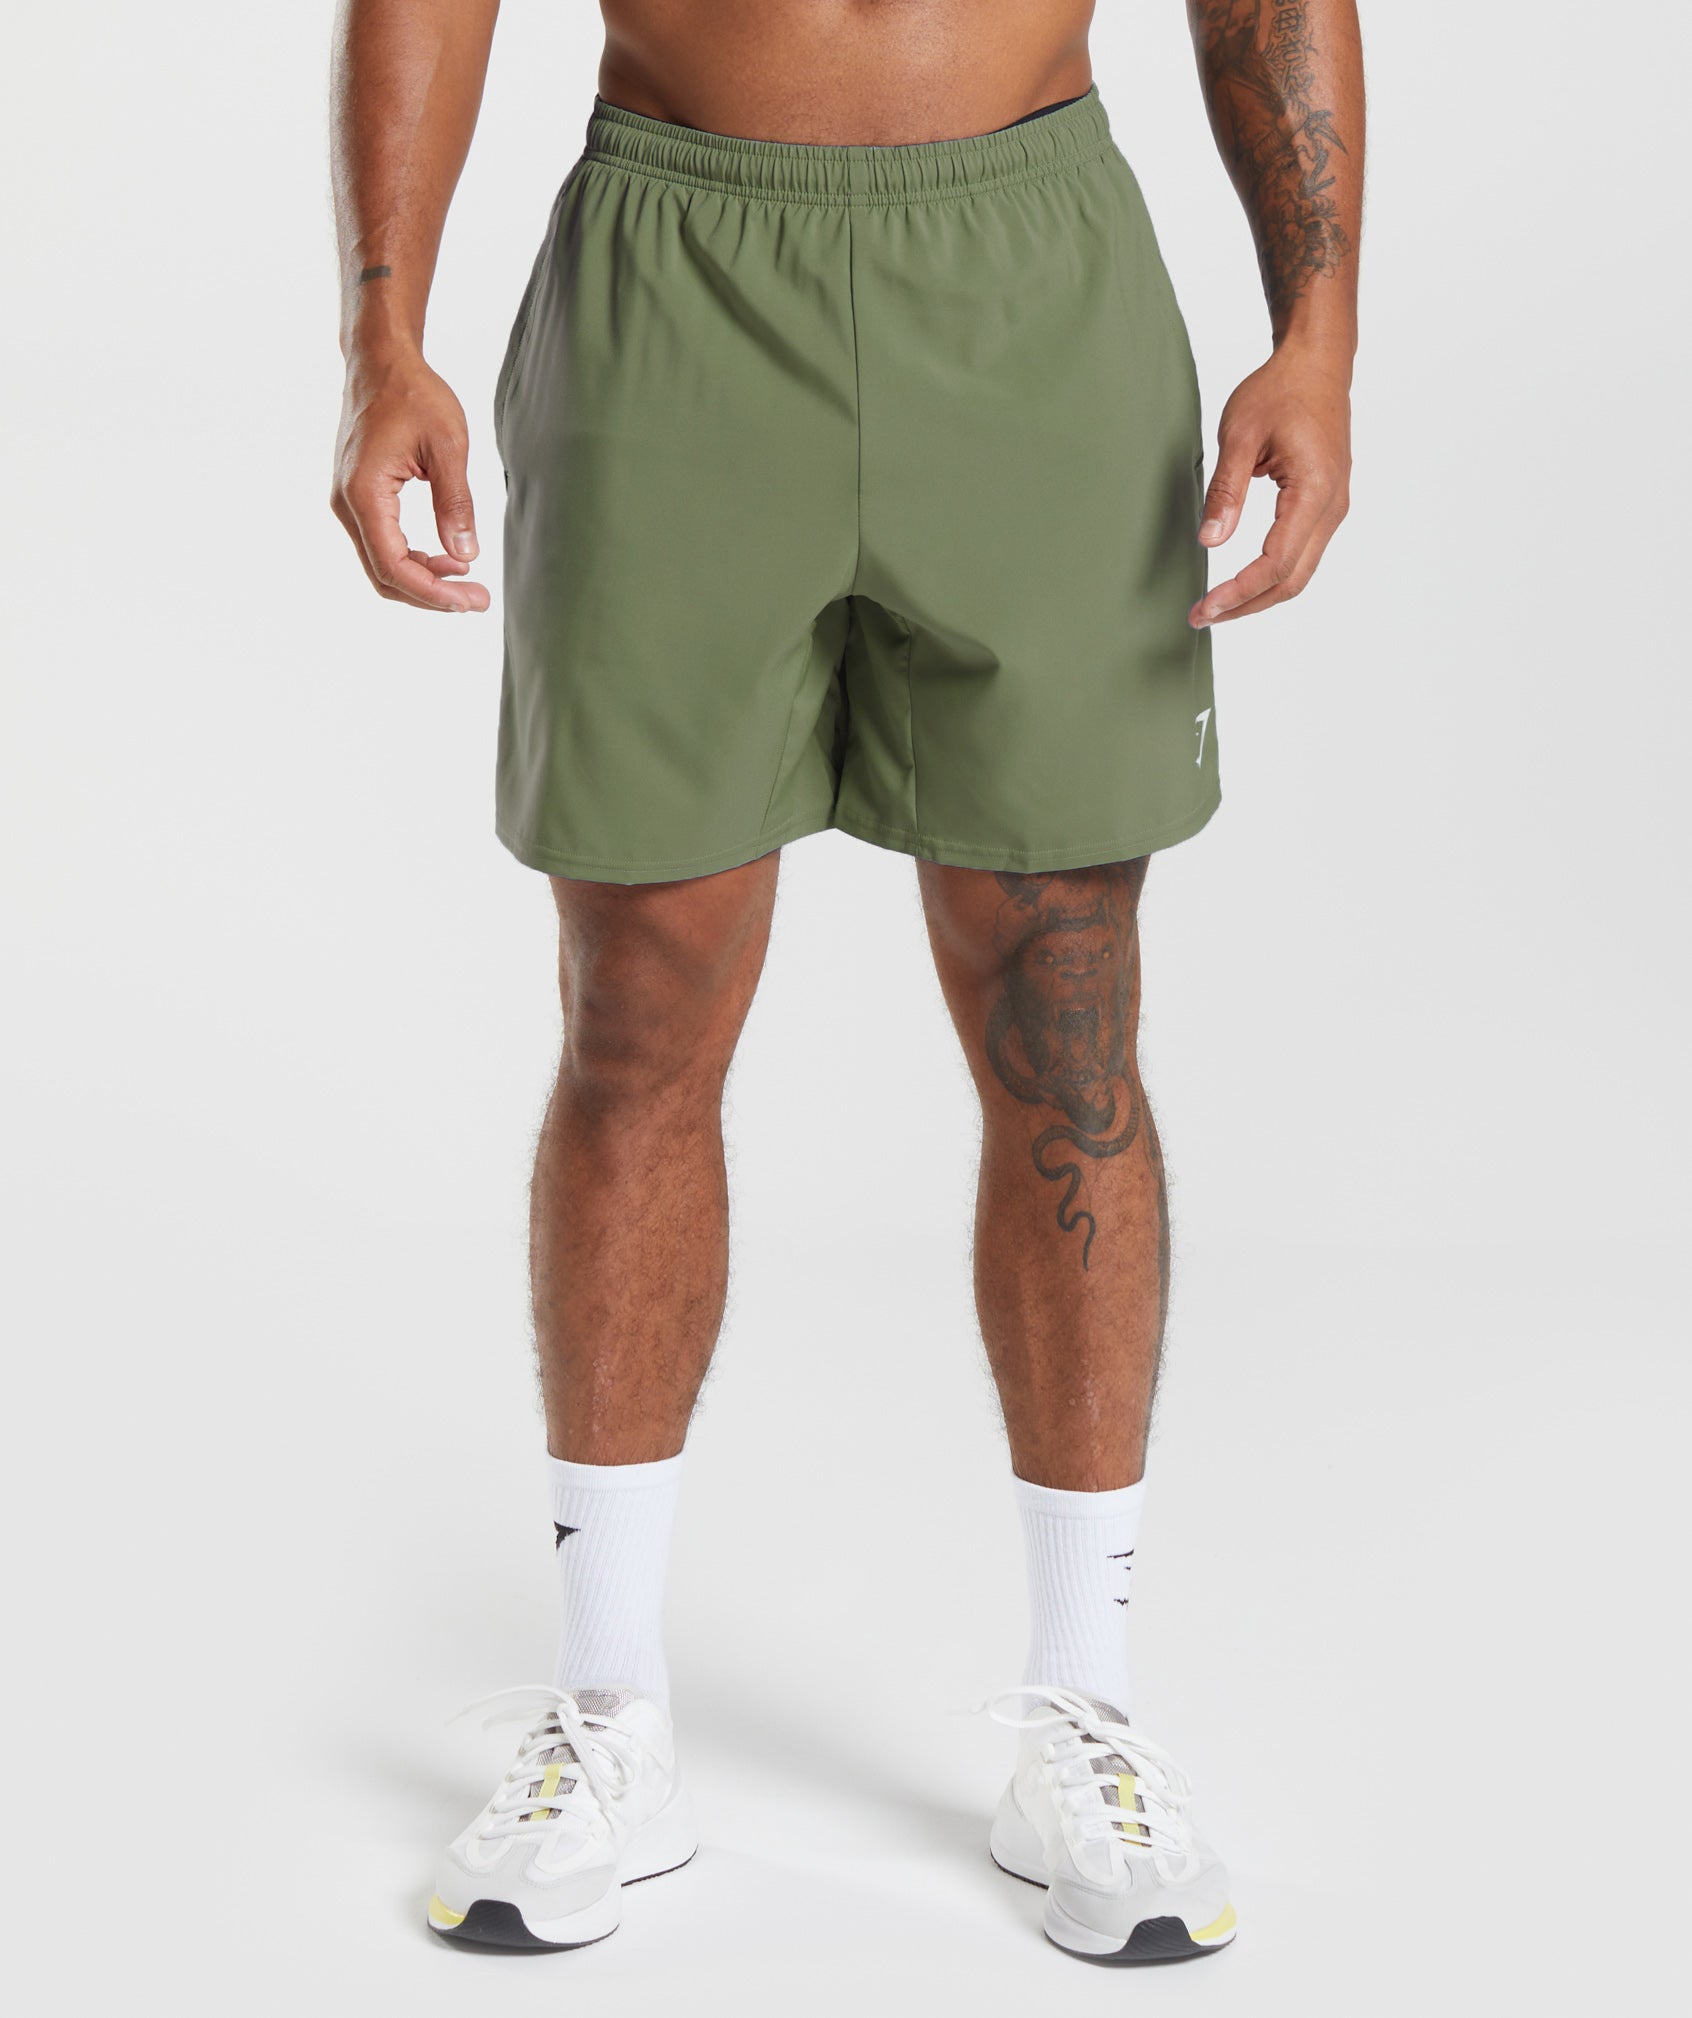 Gymshark Short shorts